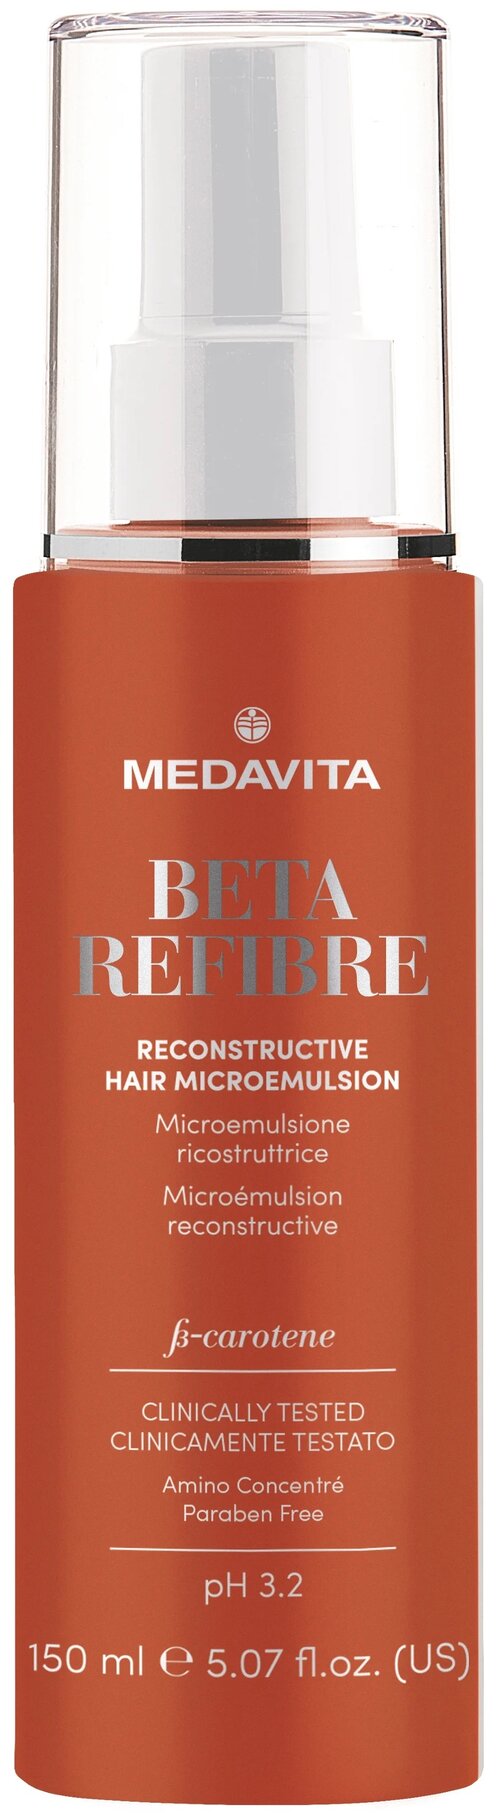 MedaVita Восстанавливающая микро-эмульсия для повреждённых волос Beta-Refibre, 150 мл, спрей